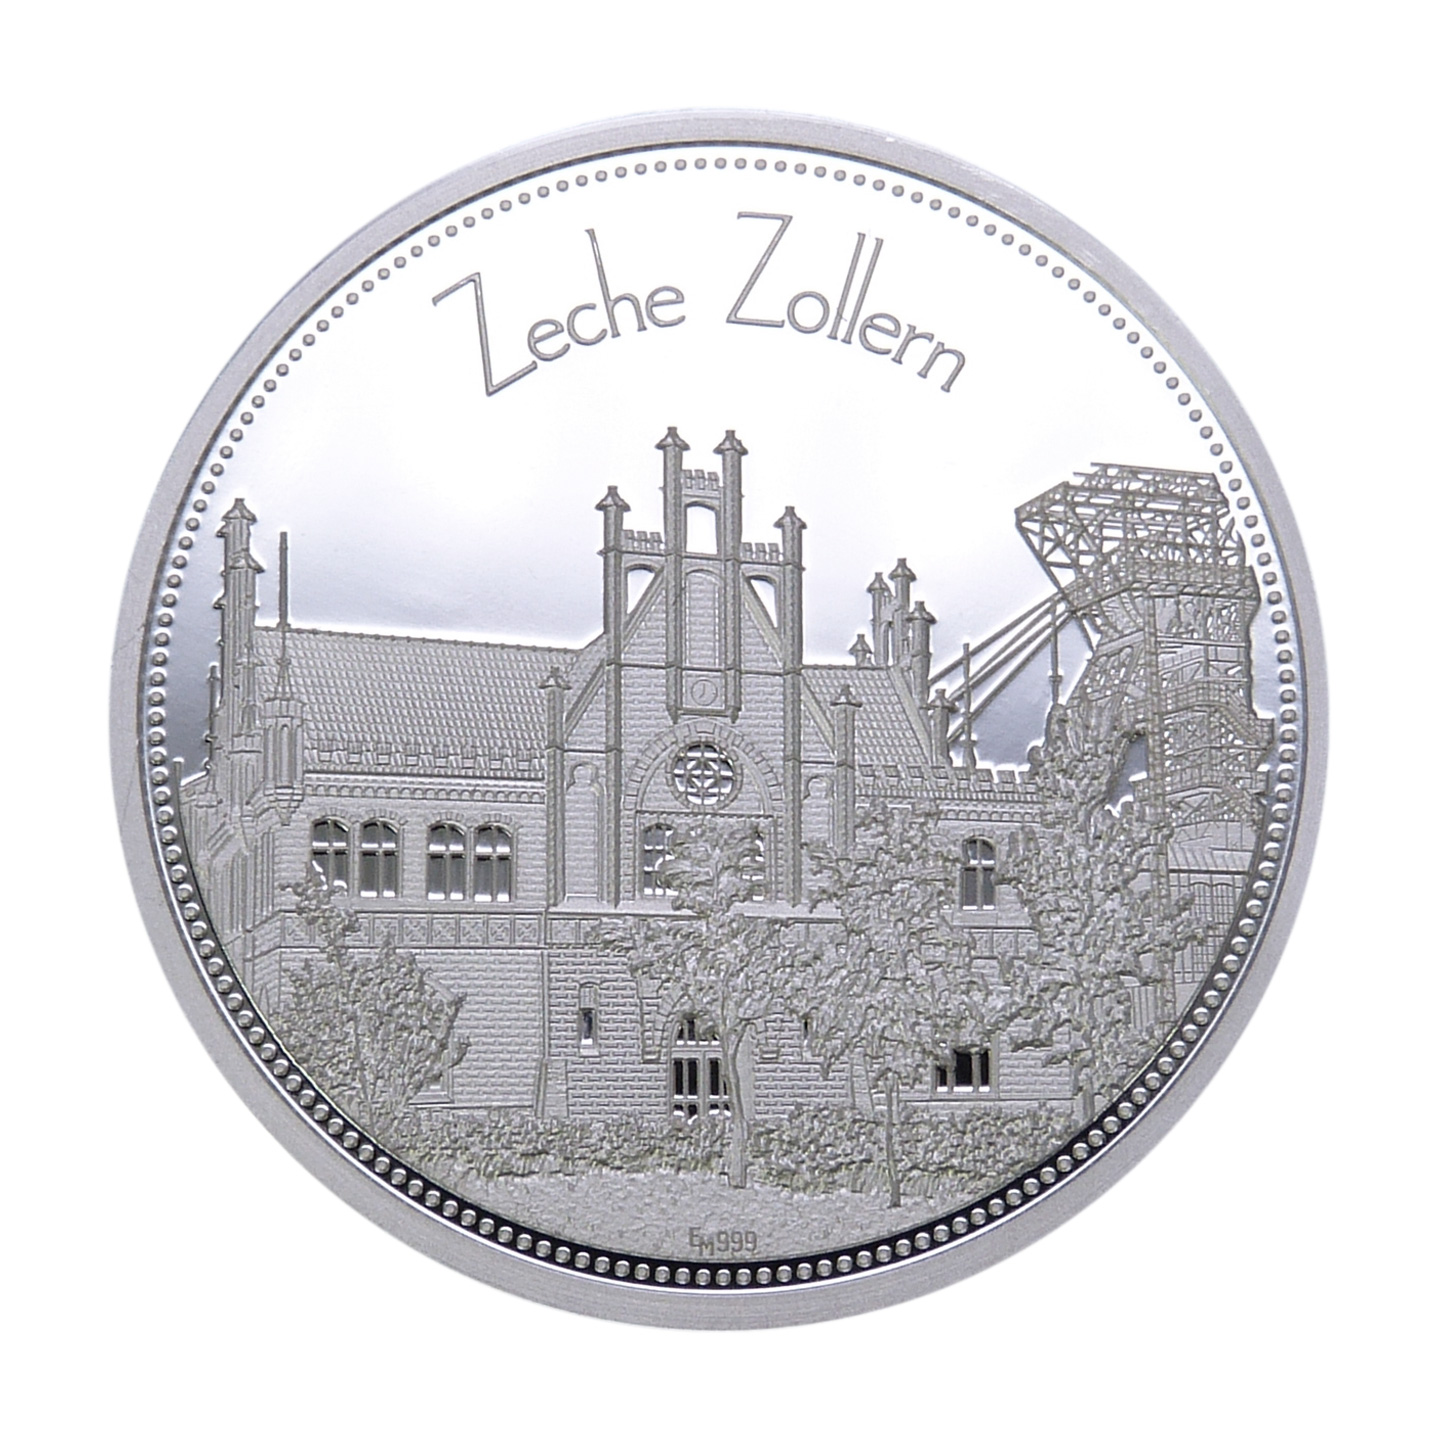 Sammeledition "Zechen im Ruhrgebiet" - 2. Motiv "Zeche Zollern" - Silber